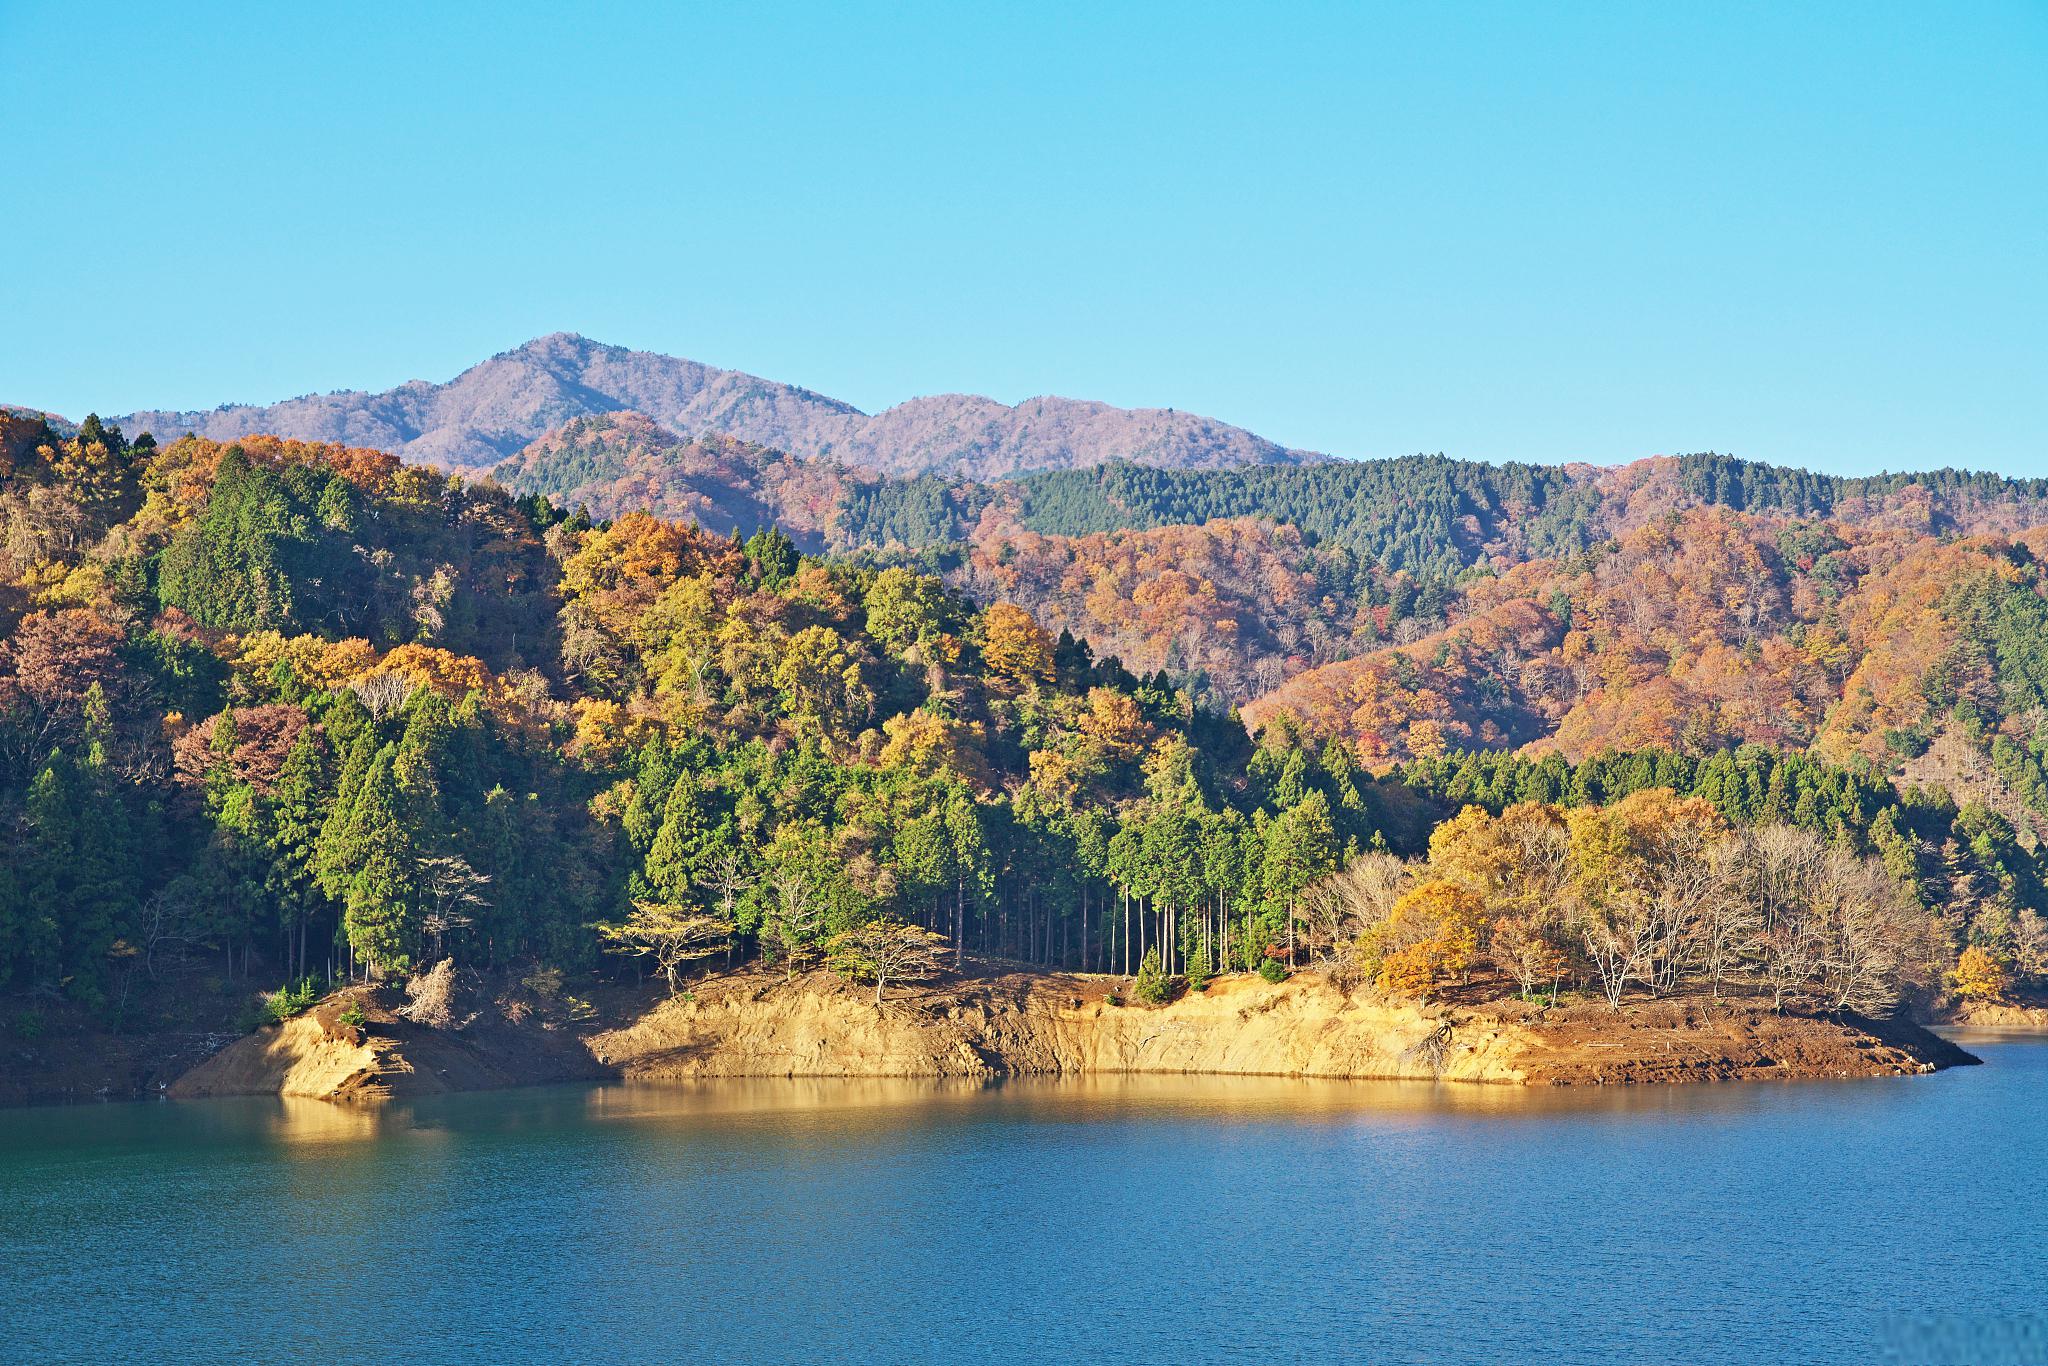 杜鹃湖风景区:秋天的人间仙境 杜鹃湖风景区位于贵州省长顺县广顺镇